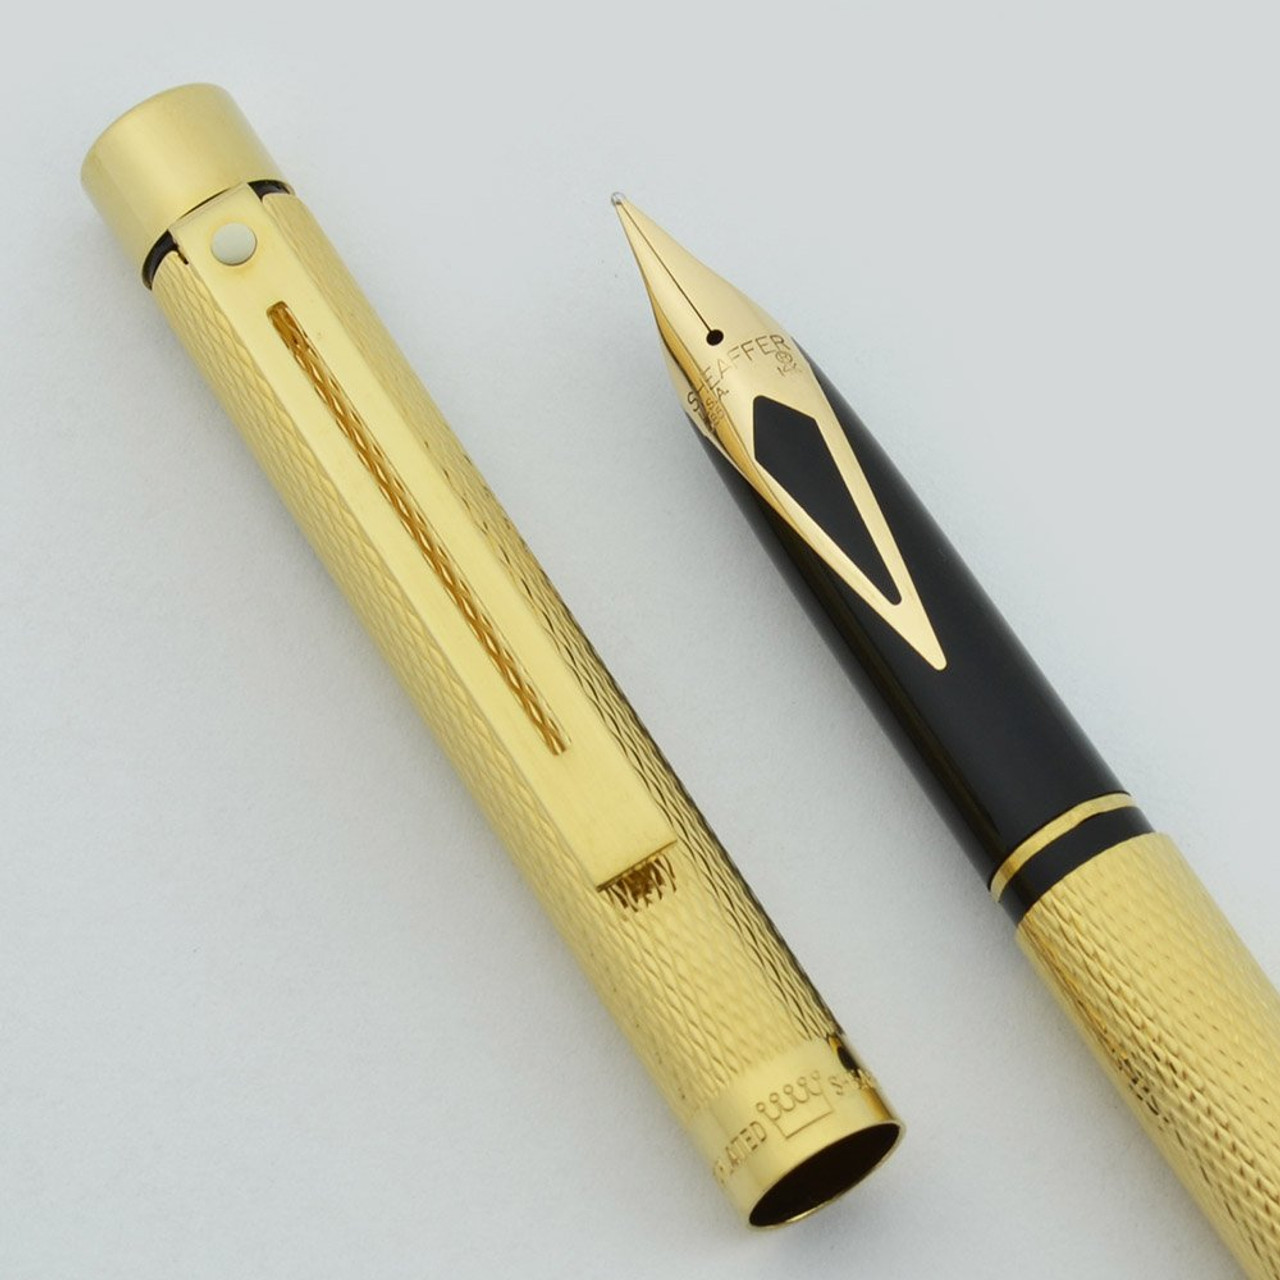 Sheaffer Targa 1009s Slim Fountain Pen - Gold Barleycorn, Medium 14k Nib (New Old Stock)